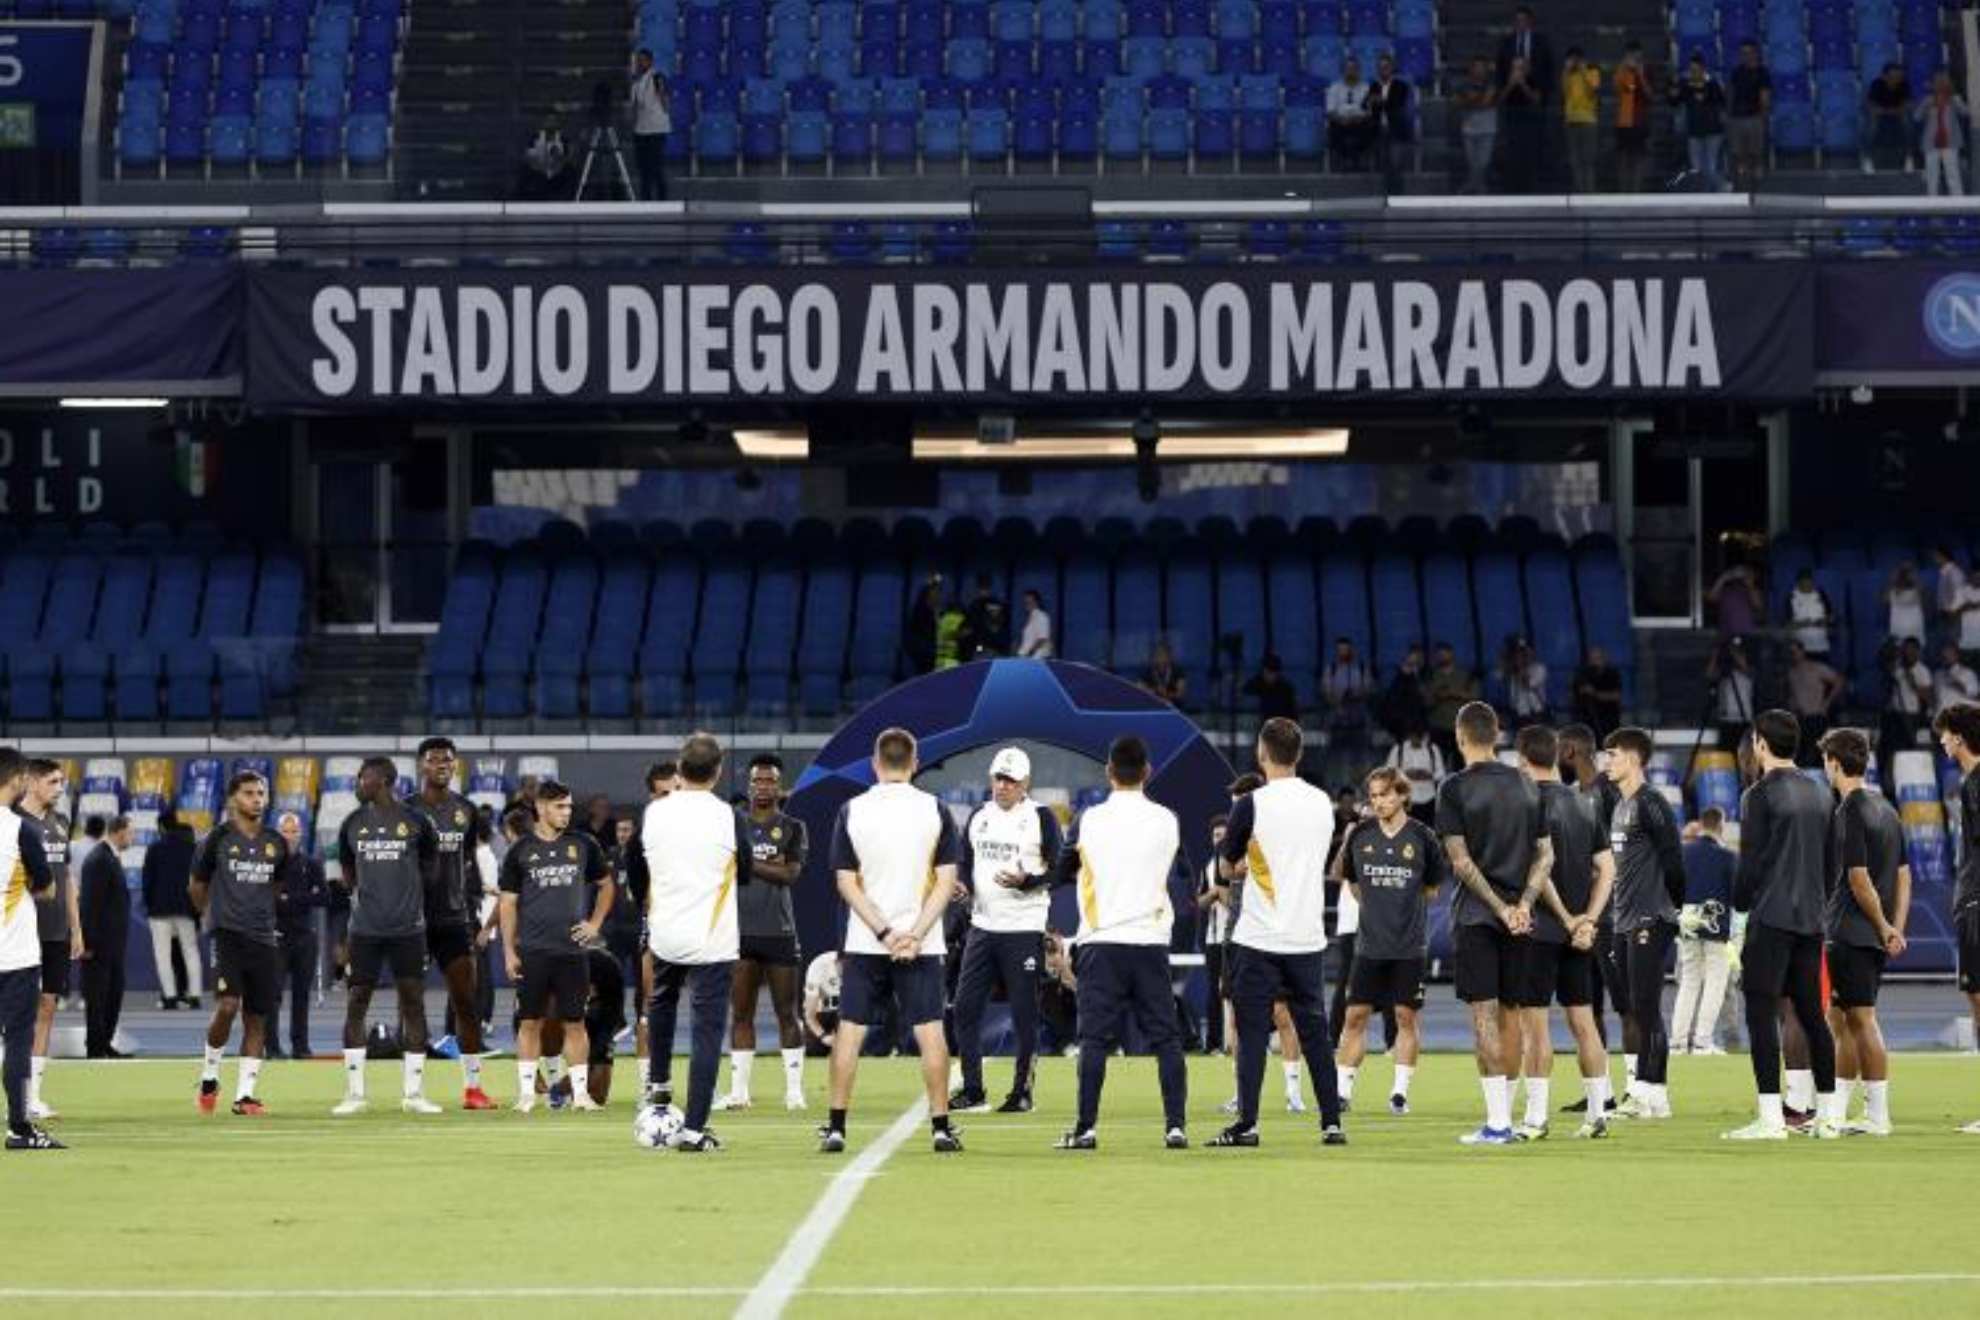 Ancelotti da una charla a sus jugadores en el Estadio Diego Armando Maradona.